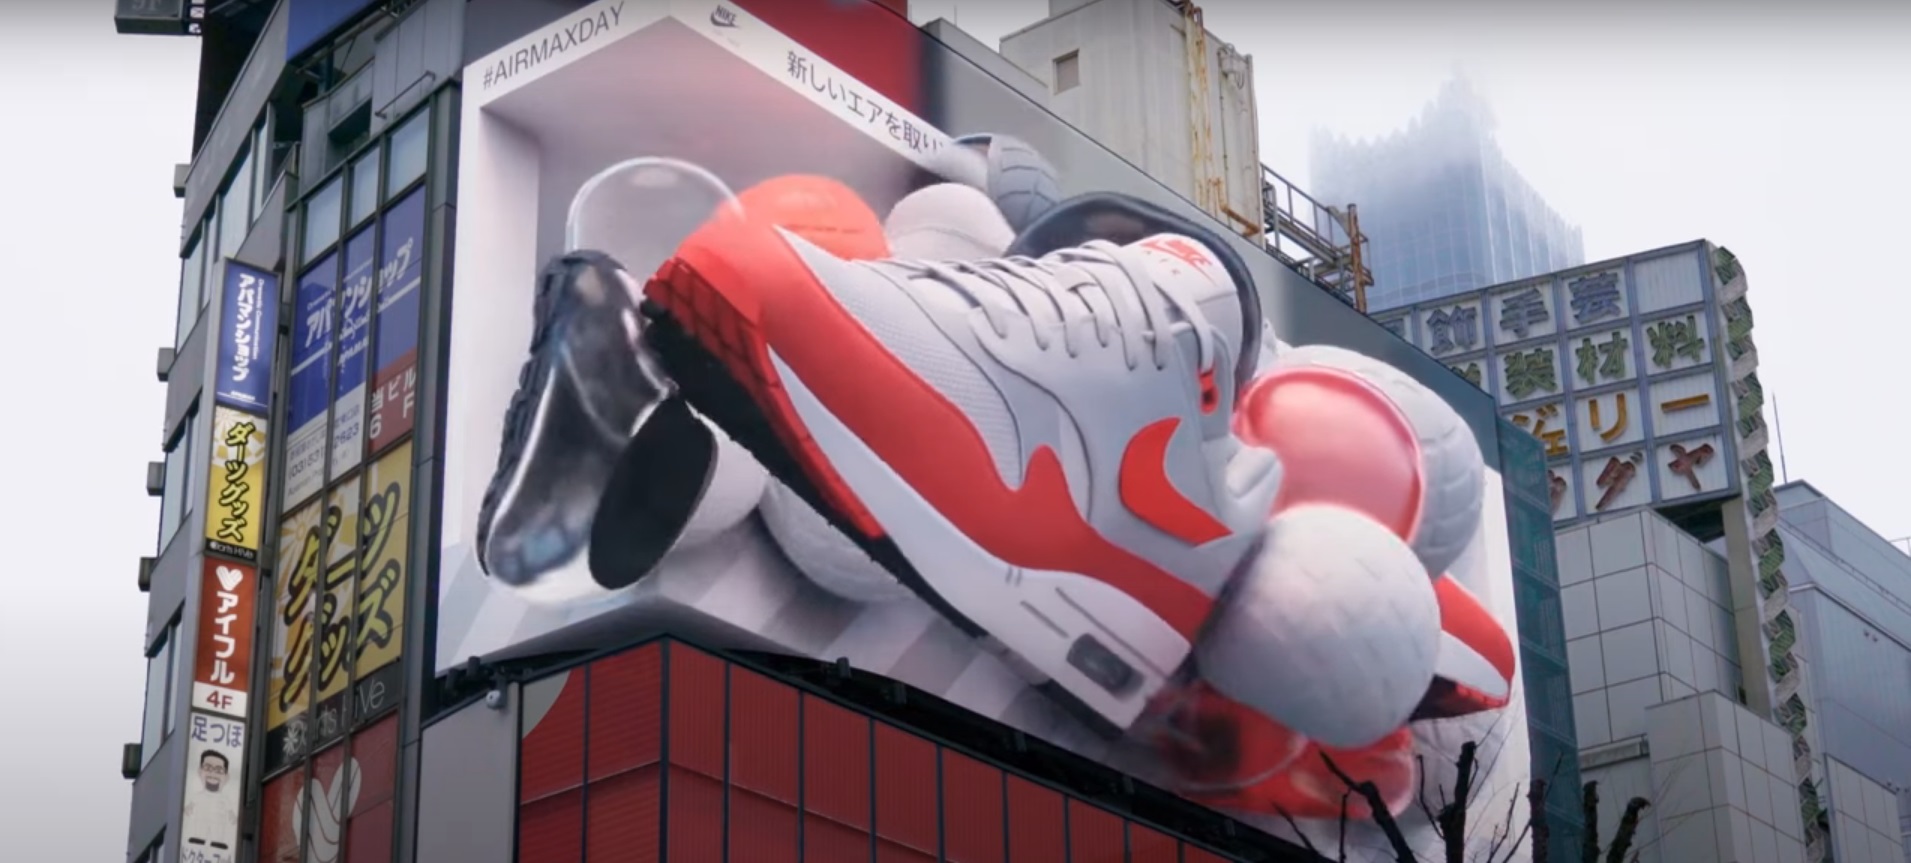 orgaan band dozijn Nike Air Max viert 35-jarig jubileum met bizarre 3D-advertentie in Japan -  SGXL.NL